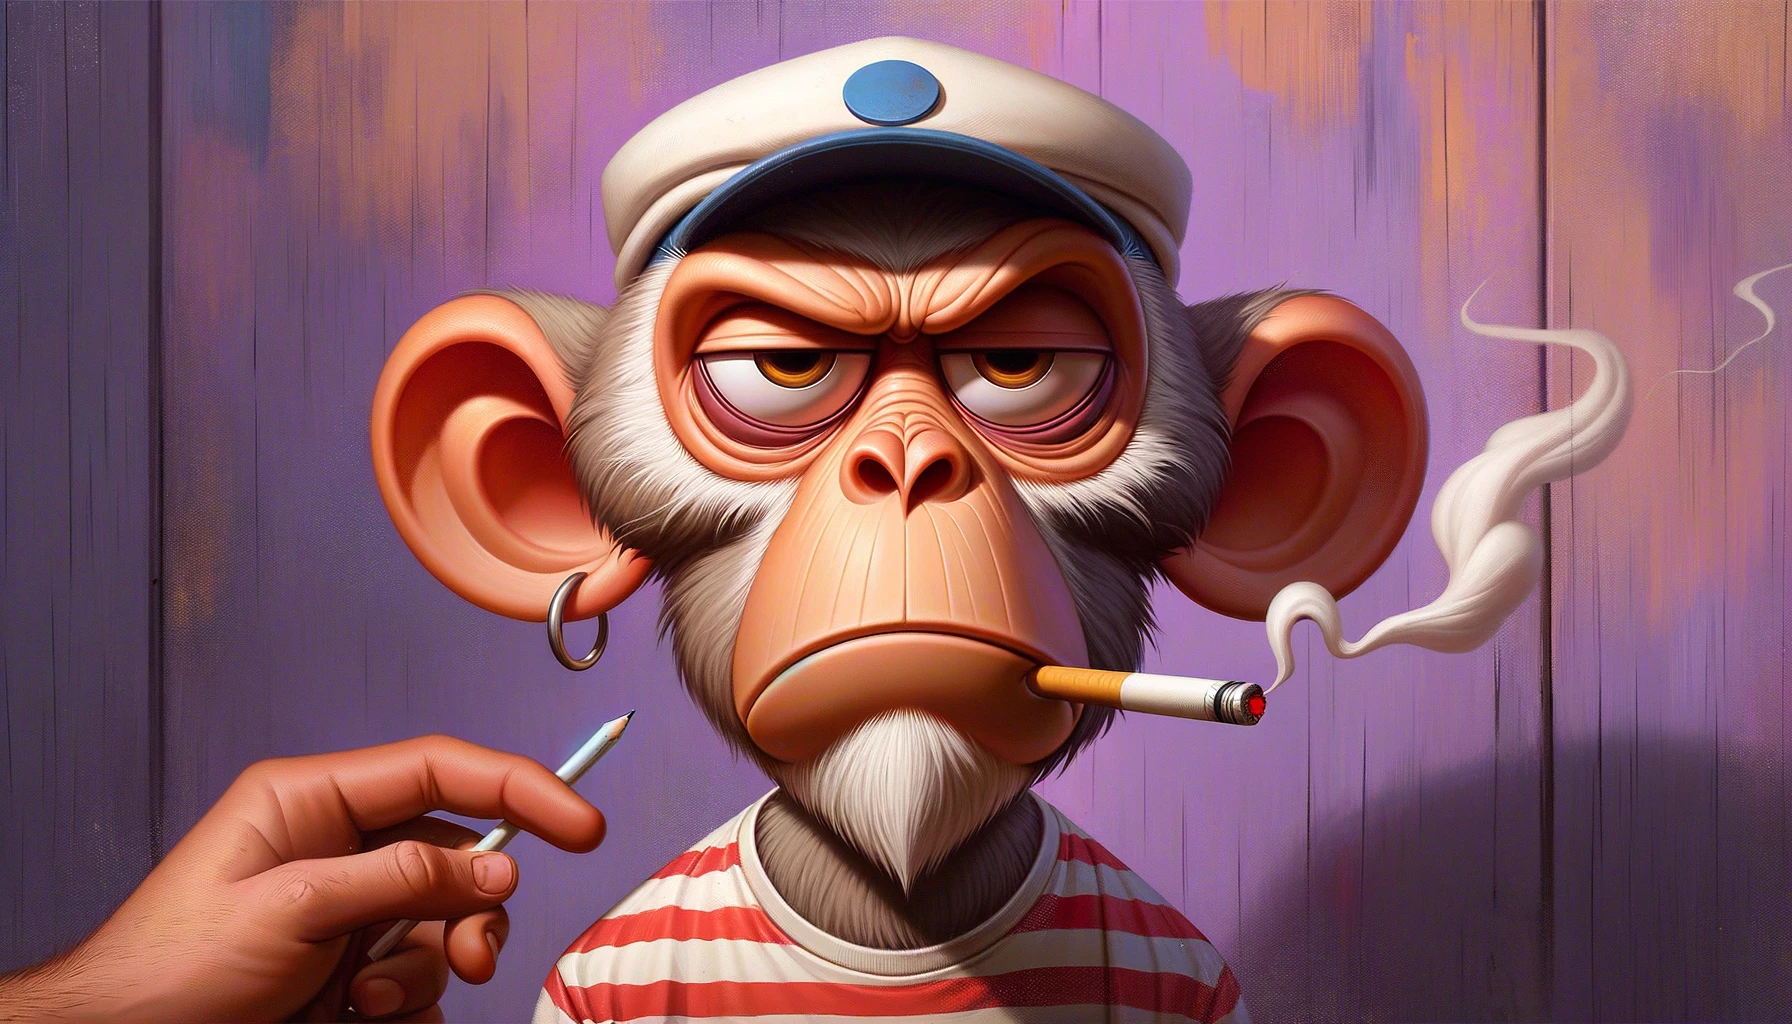 Caricatura de macaco estilizado com expressão irritada, usando boné e camisa listrada.